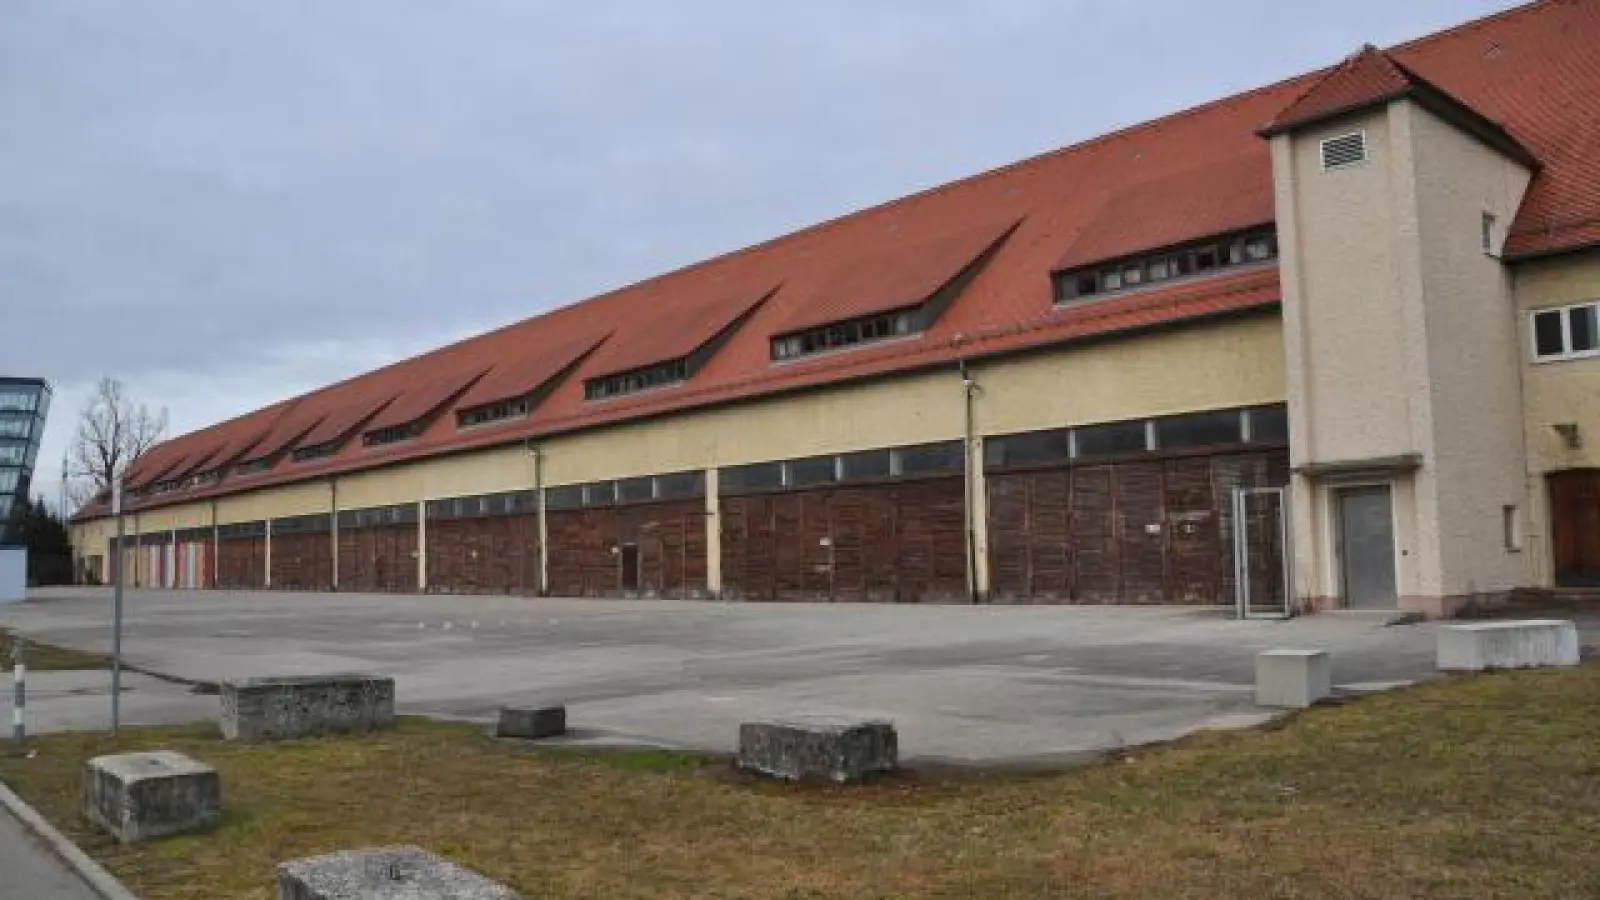 Seit dem Abzug   der amerikanischen Streitkräfte im Jahr 1998 steht die Halle 116 leer. Vor der Befreiung diente sie als Außenlager des KZ Dachau. In dem Gebäude soll nun ein Erinnerungs- und Lernort entstehen.	Foto: Nana Asante (Foto: Nana Asante)